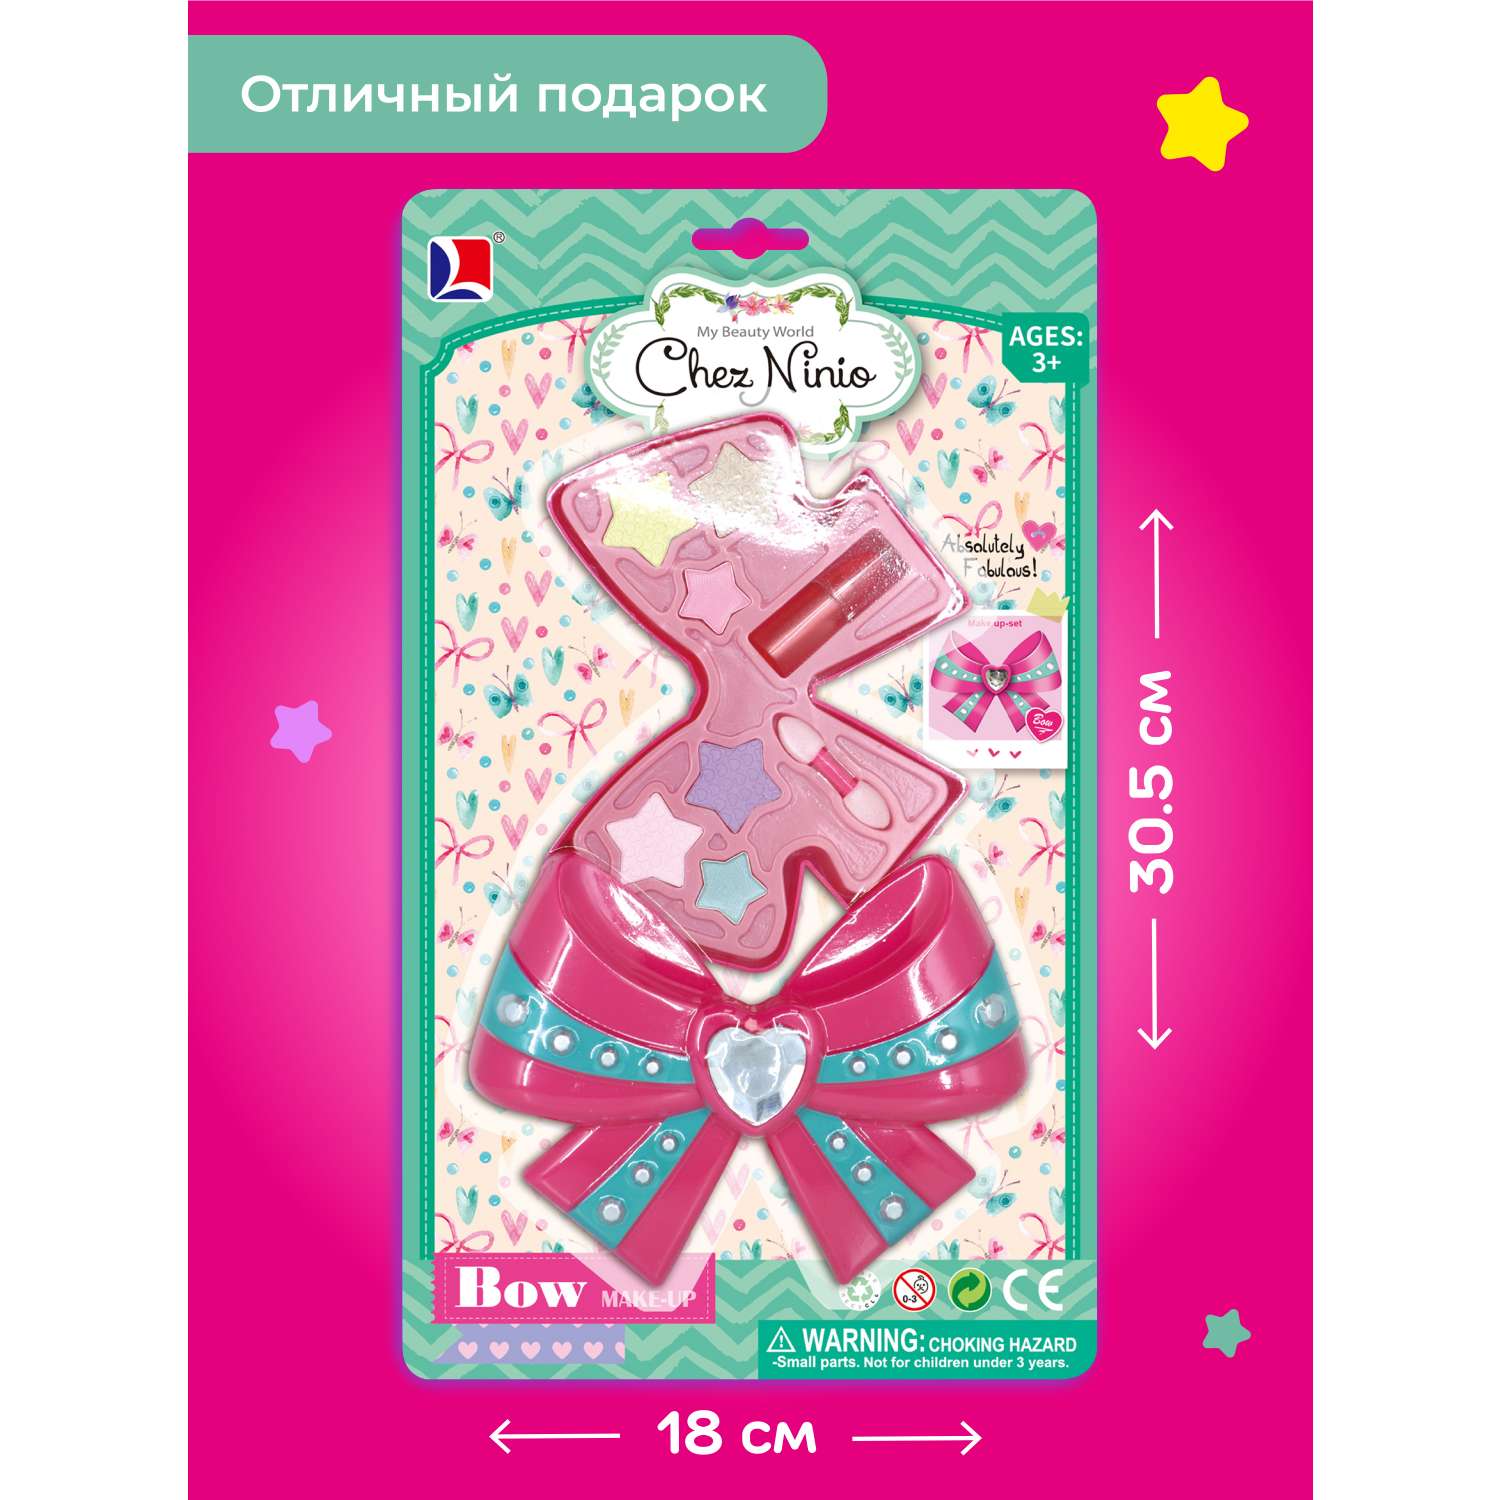 Детская косметика Наша Игрушка для девочек Помада декоративная Игровой набор - фото 5